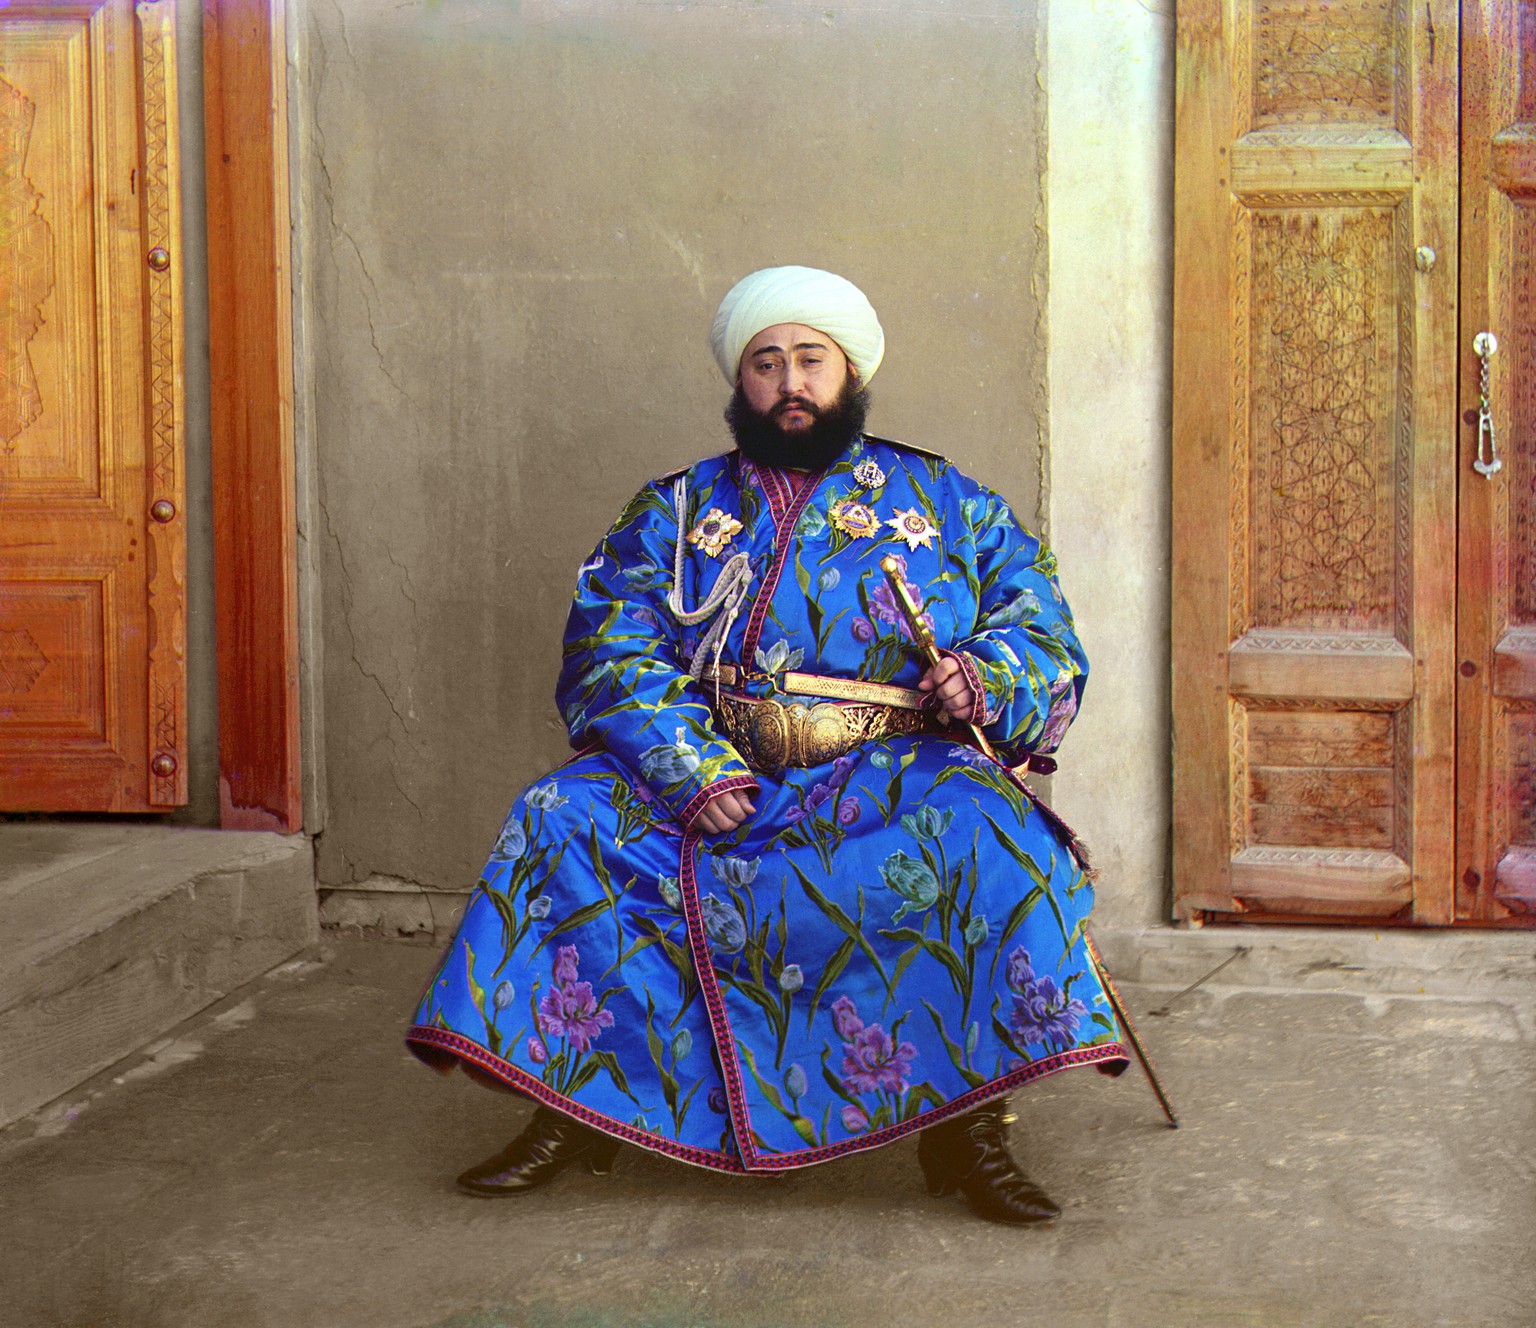 Mohammed Alim Khan, Herrscher des Emirats Buchara in Usbekistan, damals ein russisches Protektorat.&nbsp;